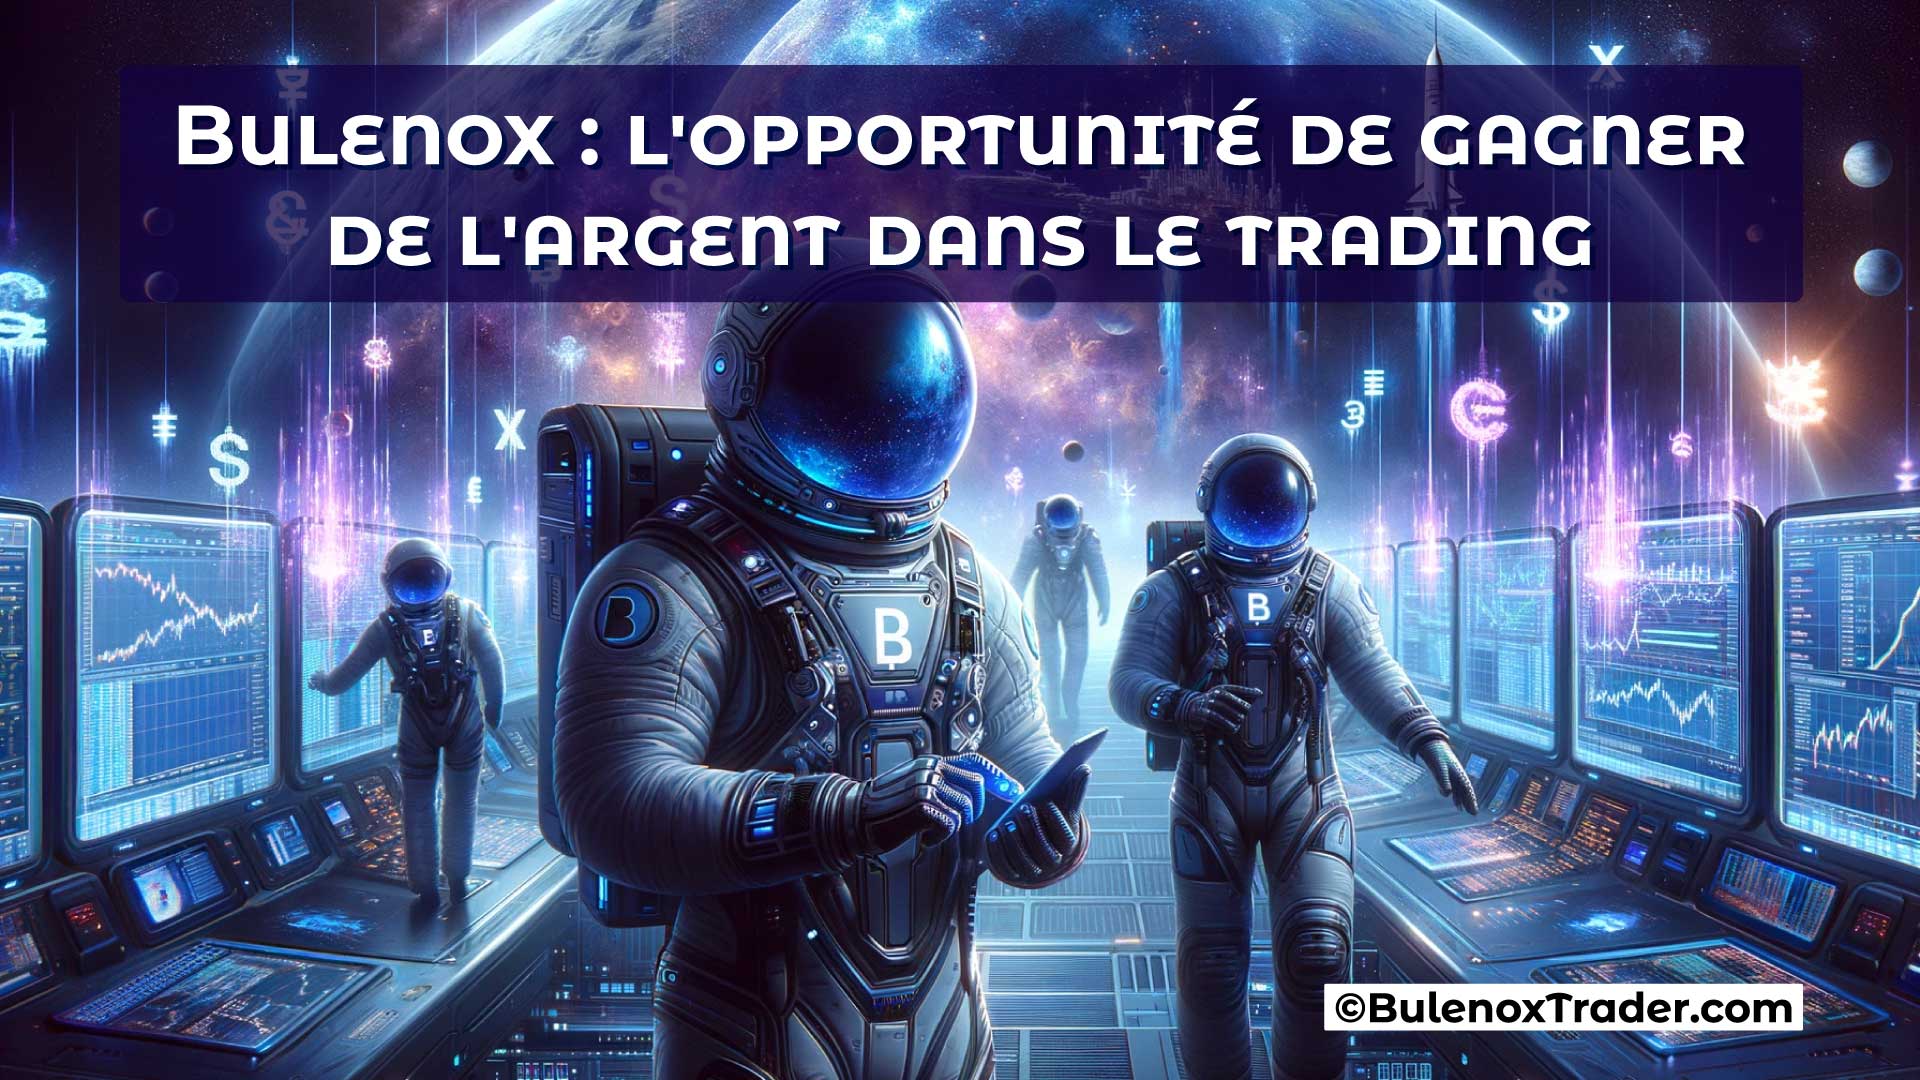 Bulenox-l'opportunité-de-gagner-de-l'argent-dans-le-trading-on-Bulenox-Trader-Website